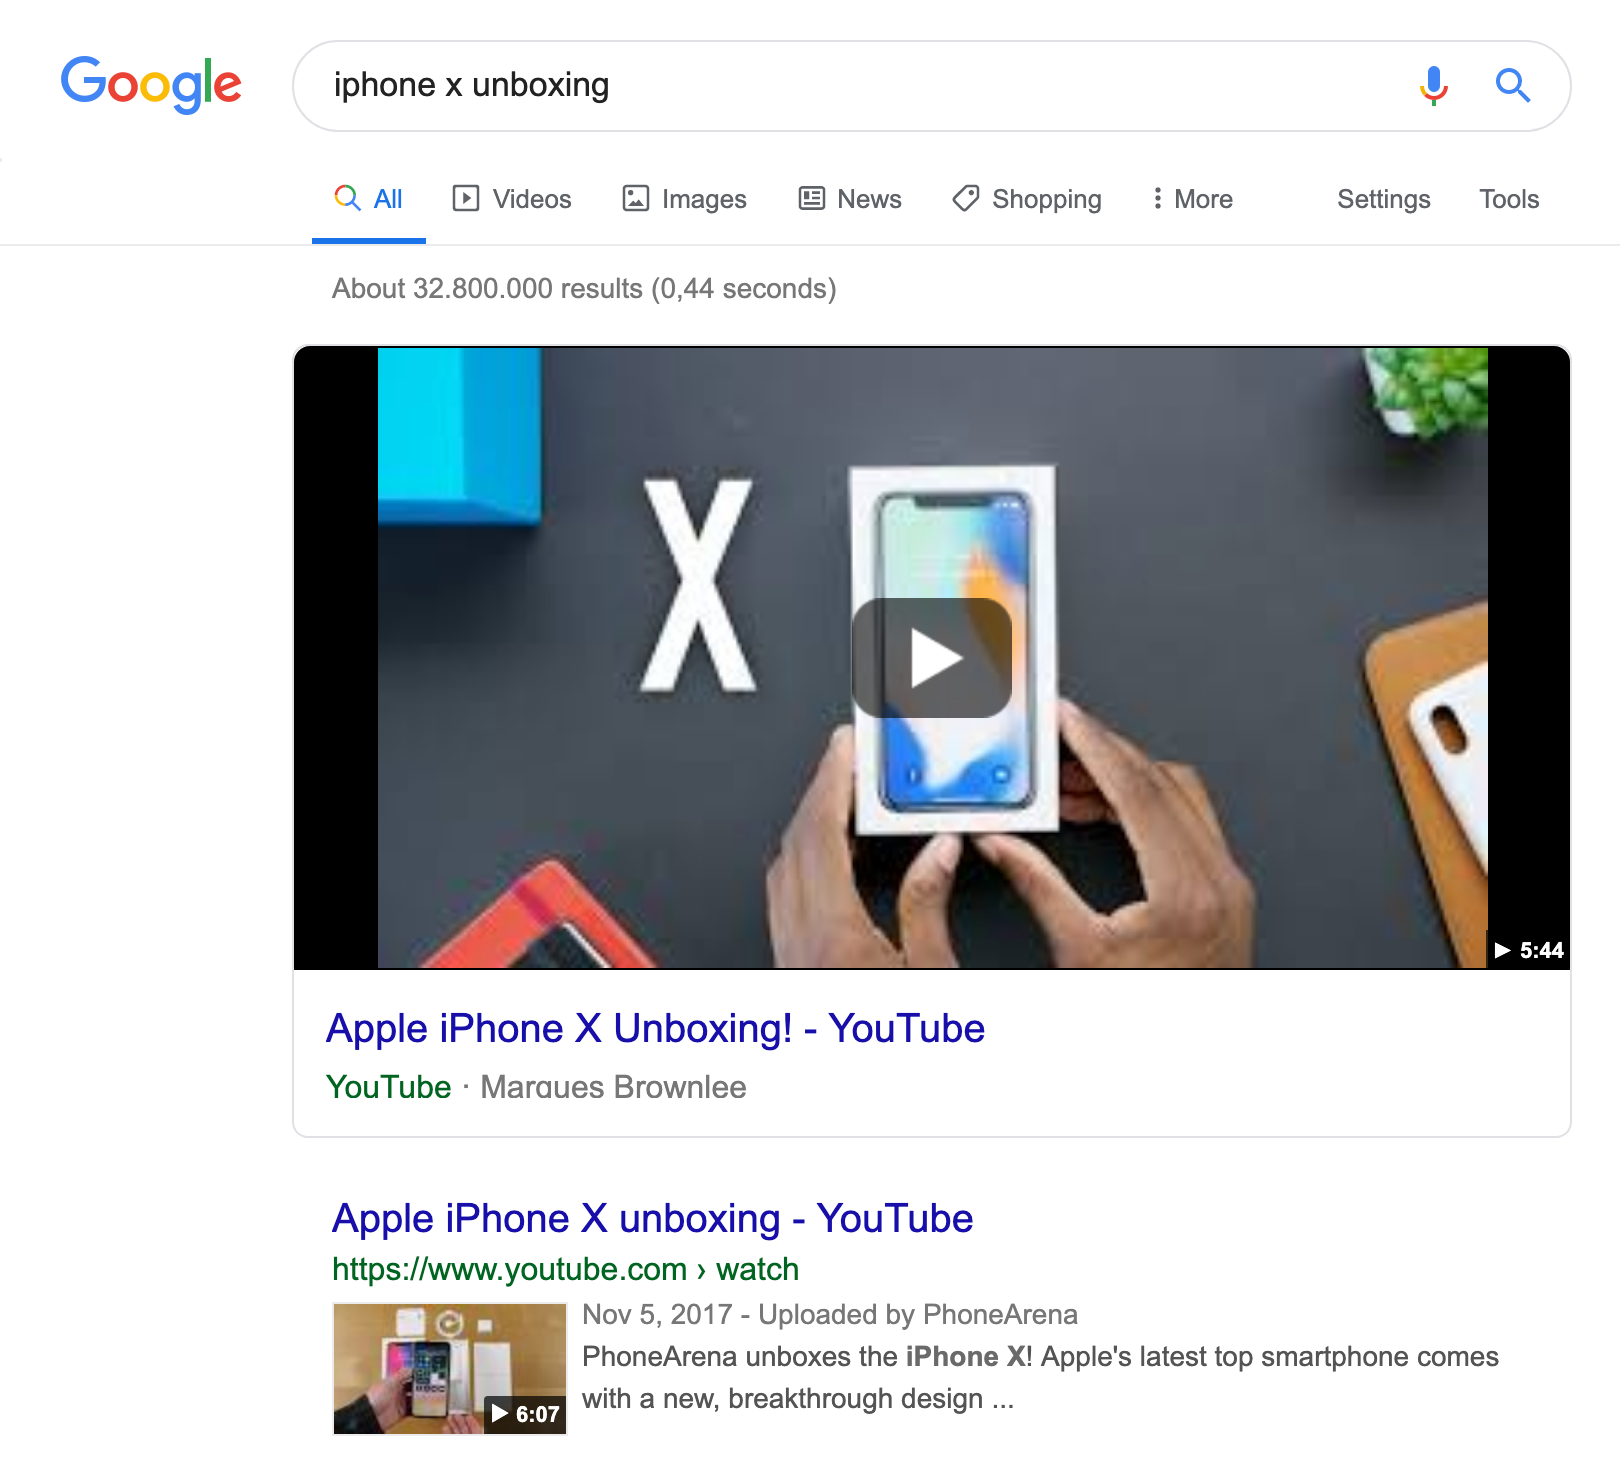 Suchergebnisseite für die Suchanfrage "iphone x unboxing". Als erstes wird ein Featured Snippet Kasten angezeigt in dem ein Video auf Youtube gezeigt wird.